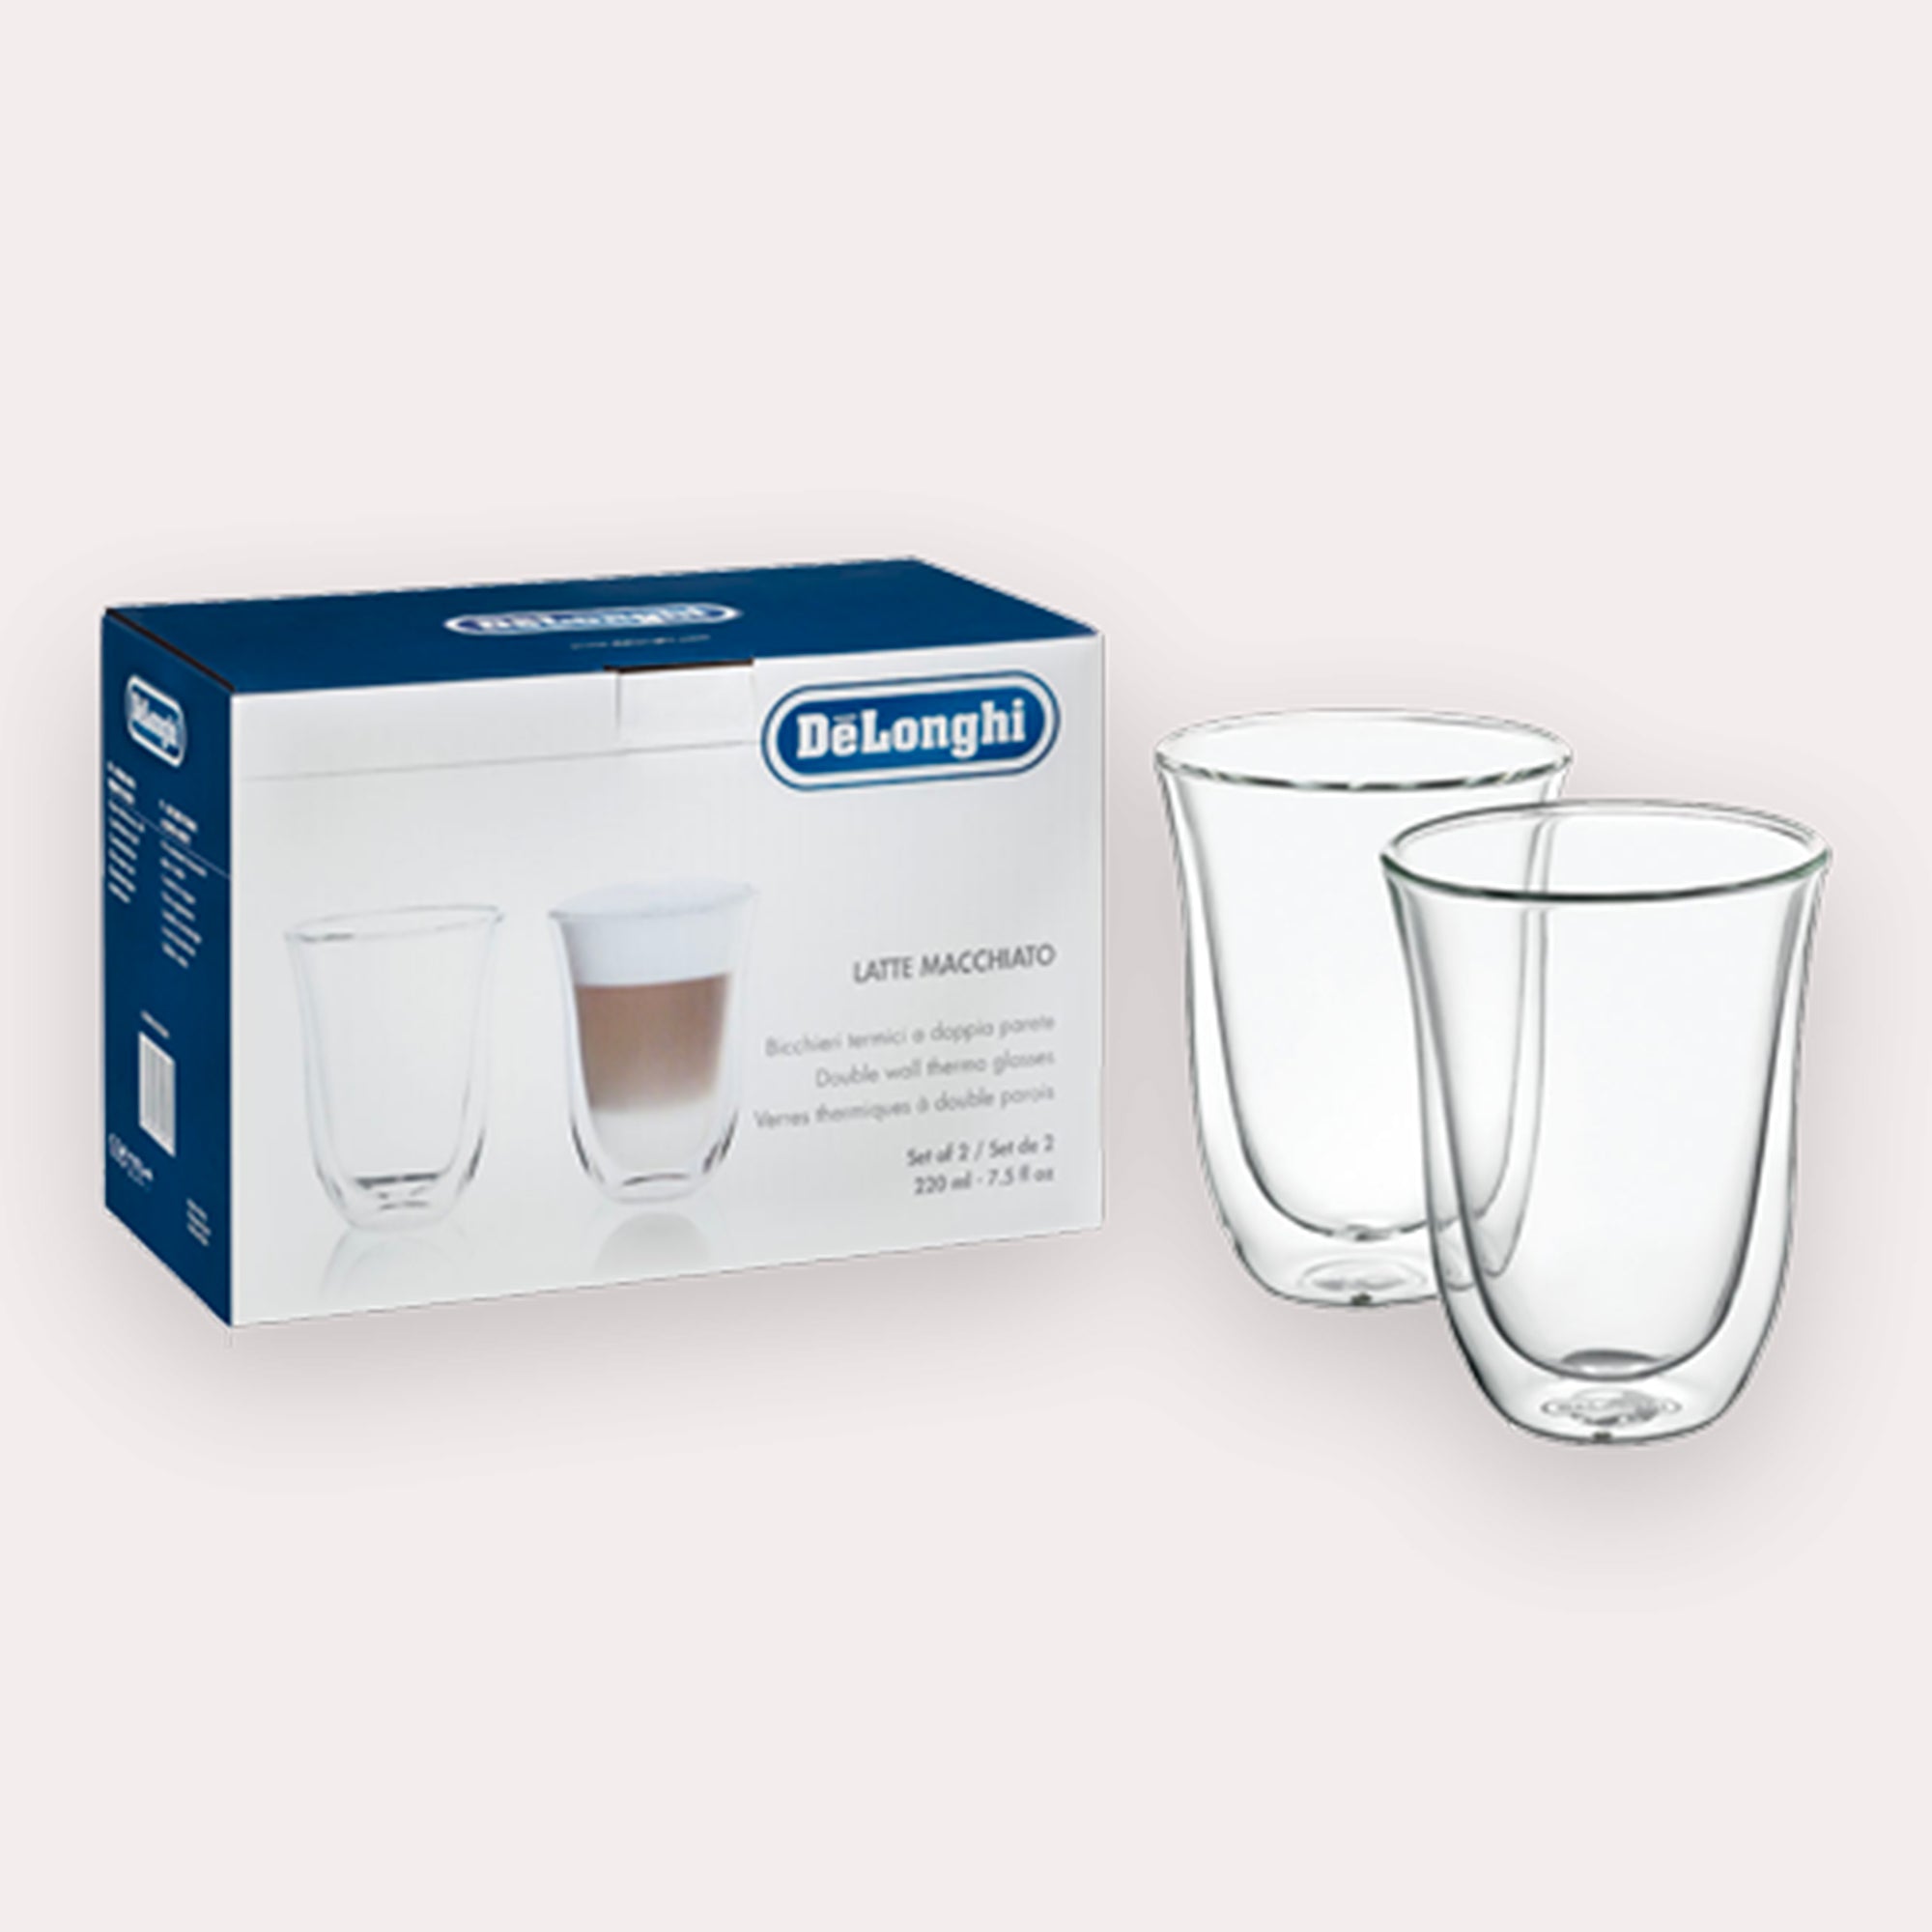 Tasses / verres à café latté en verre double paroi - Filter Logic